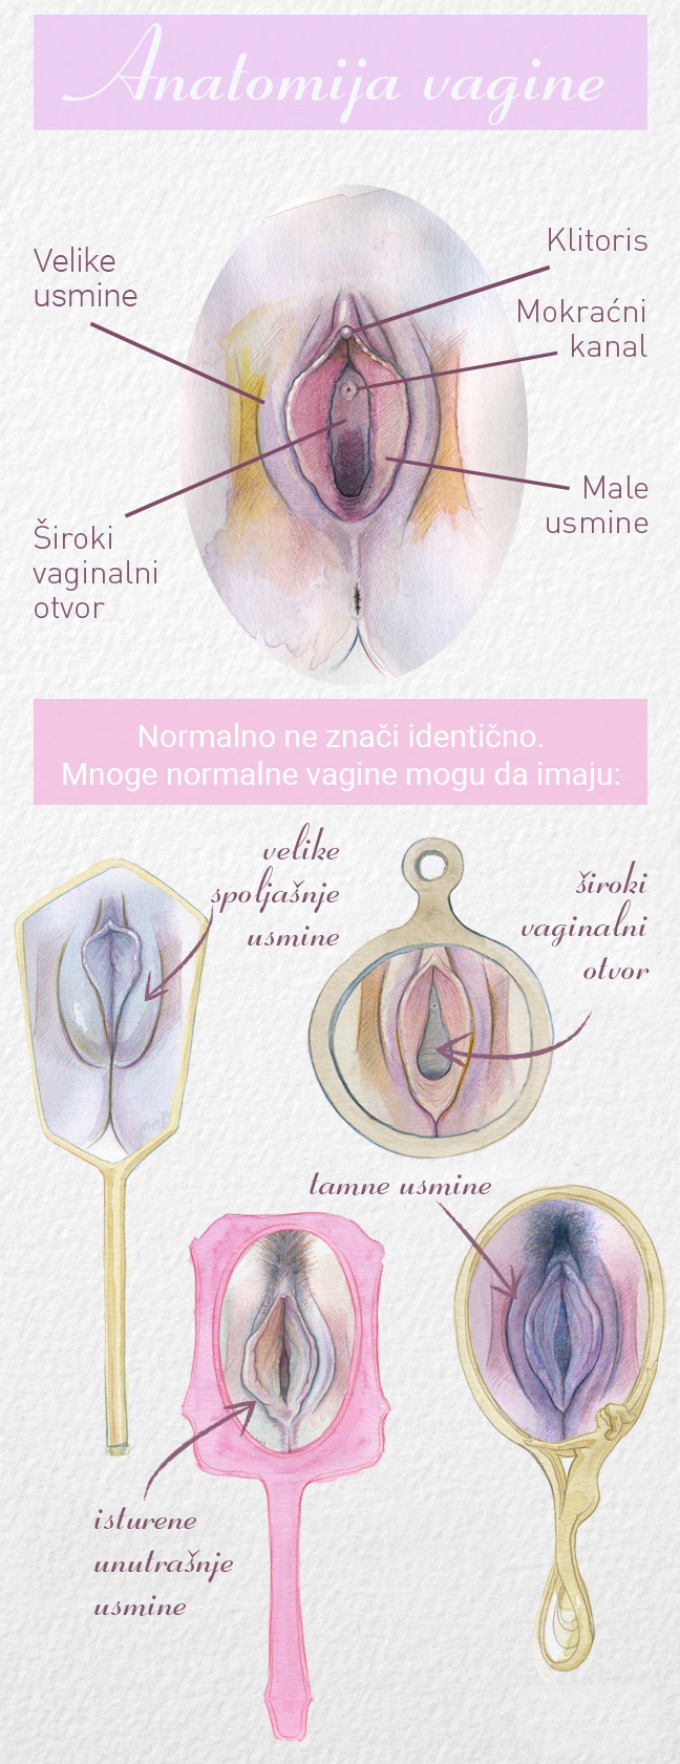 anatomija vagine Kakve vagine postoje?